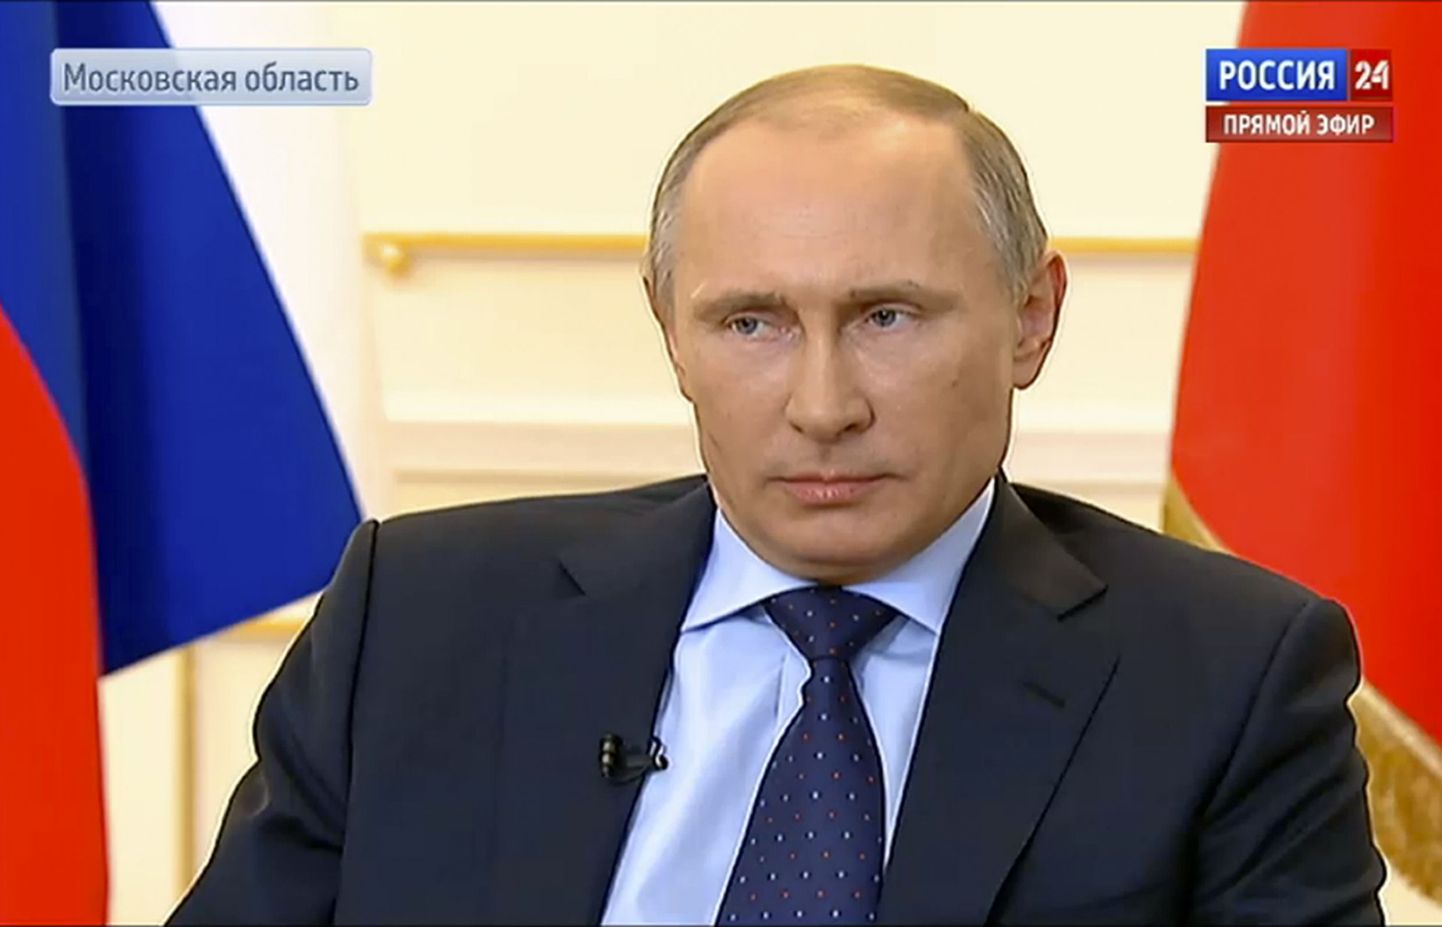 Vladimir Putin telekanali Rossija 24 otse-eetris.